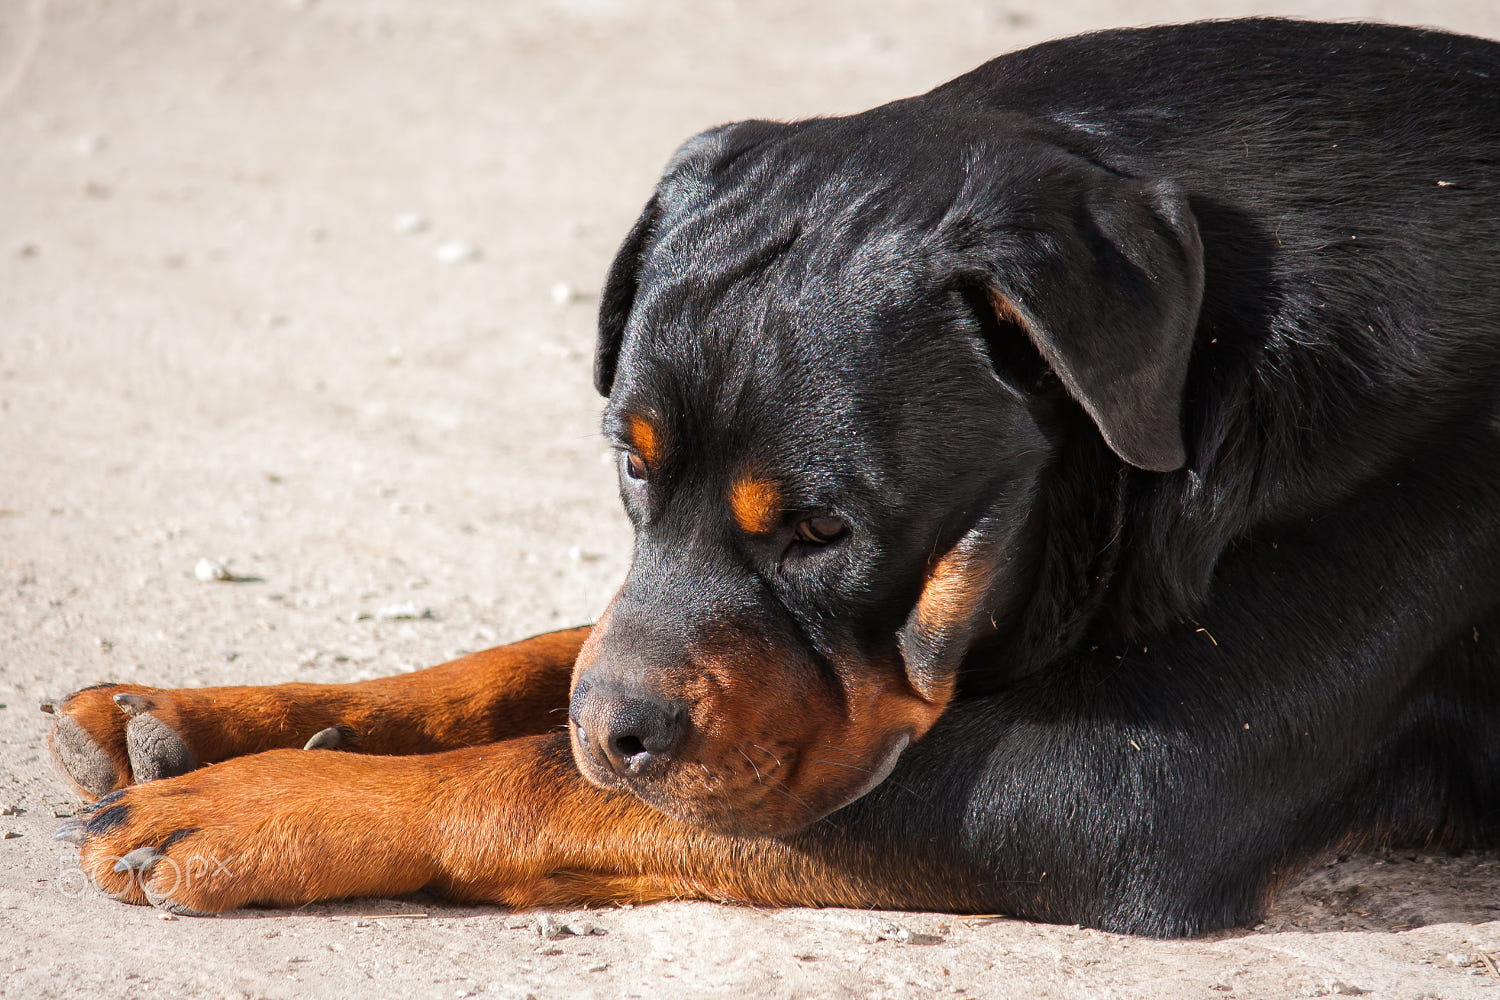 Bộ ảnh "Hình ảnh chó Rottweiler" đẹp 24